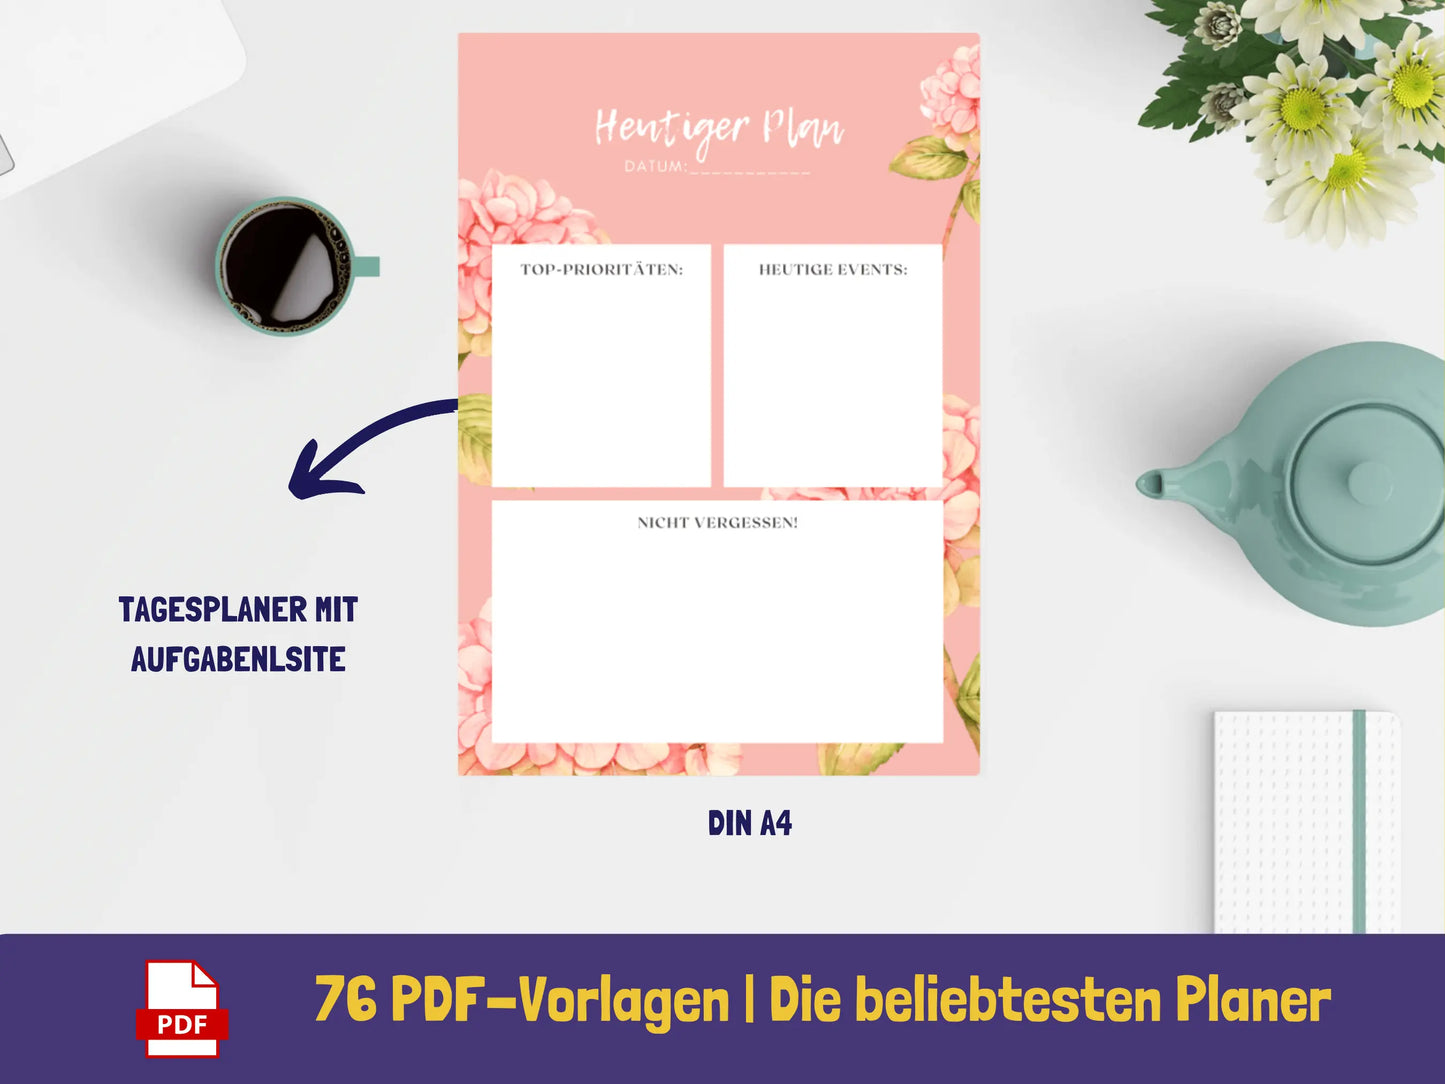 Tages-, Wochen-, Monatsplaner: Set der besten Planer - Variante Blumen PDF AndreasJansen Vorlage